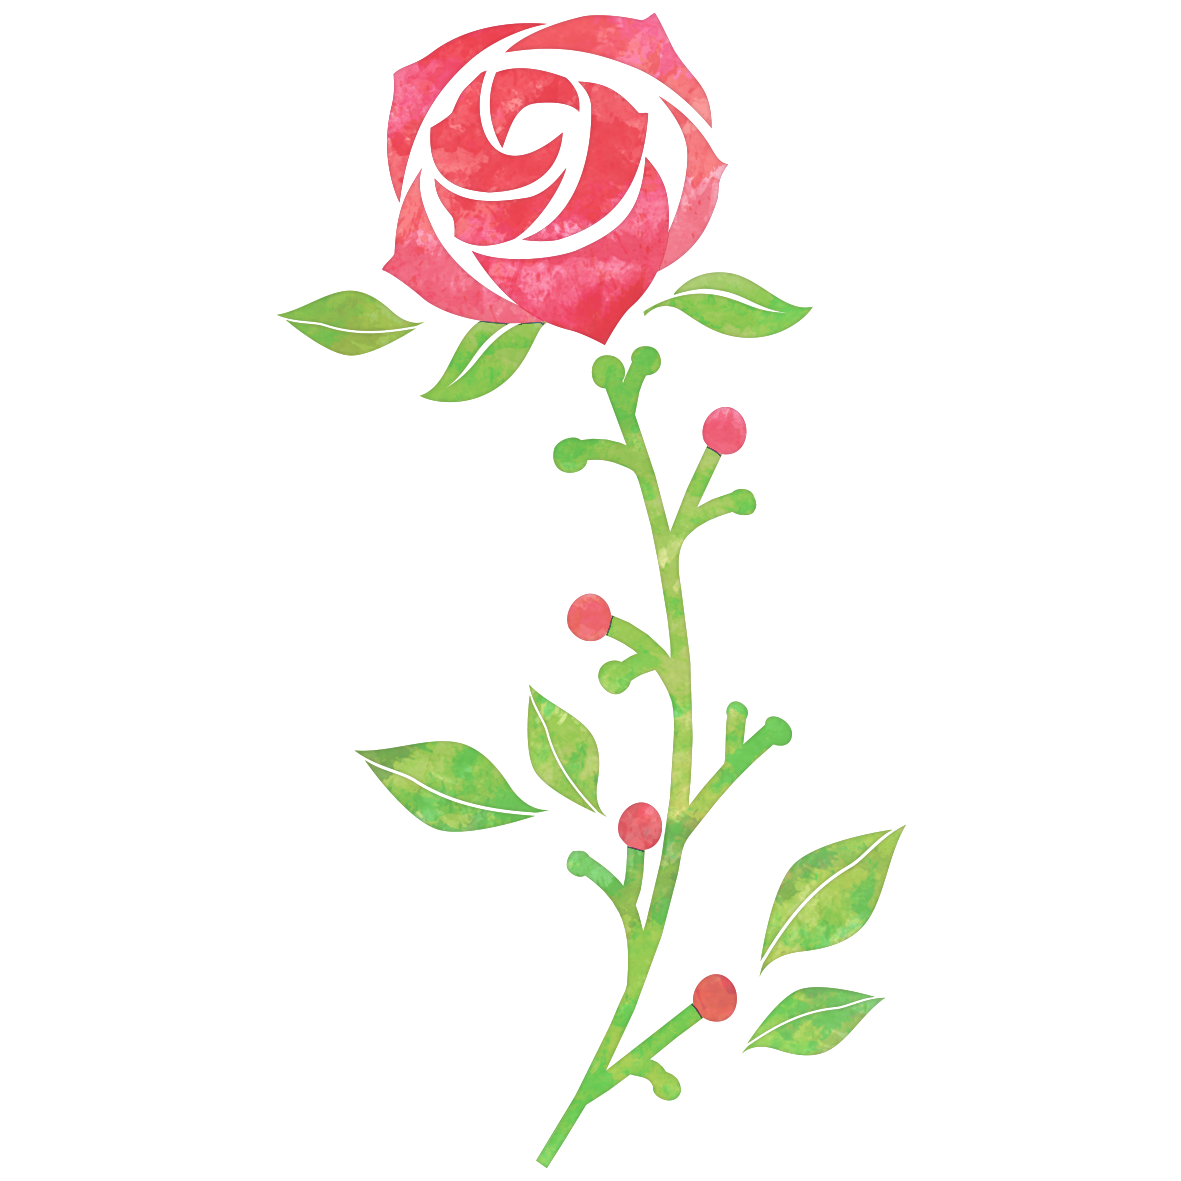 凛とした一輪の赤いバラの花のイラスト素材です。
じんわりと広がる水彩風のにじみからは優げなイメージも伝わってきますね☆<br>
感謝を伝えるメッセージカードに添えてみたり、特別な日のプレゼントのイメージにもぴったりです♪
エレガントなバラは受け手に好印象を与えること間違い無しです。
みなさんのセンスで素敵に活用してくださいね。